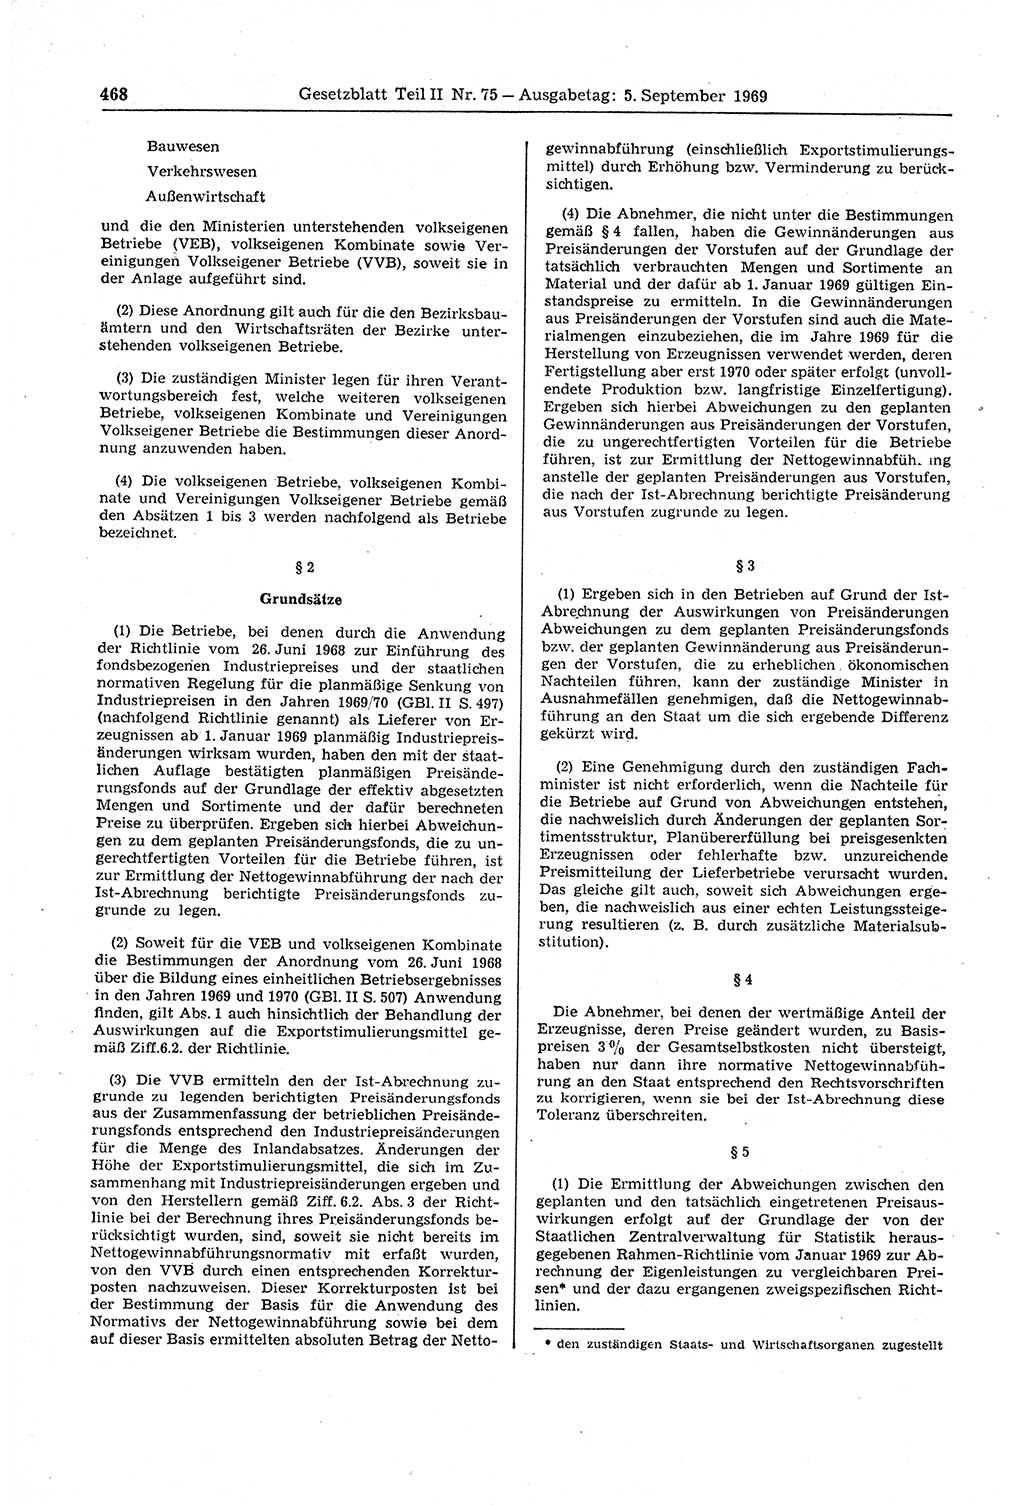 Gesetzblatt (GBl.) der Deutschen Demokratischen Republik (DDR) Teil ⅠⅠ 1969, Seite 468 (GBl. DDR ⅠⅠ 1969, S. 468)